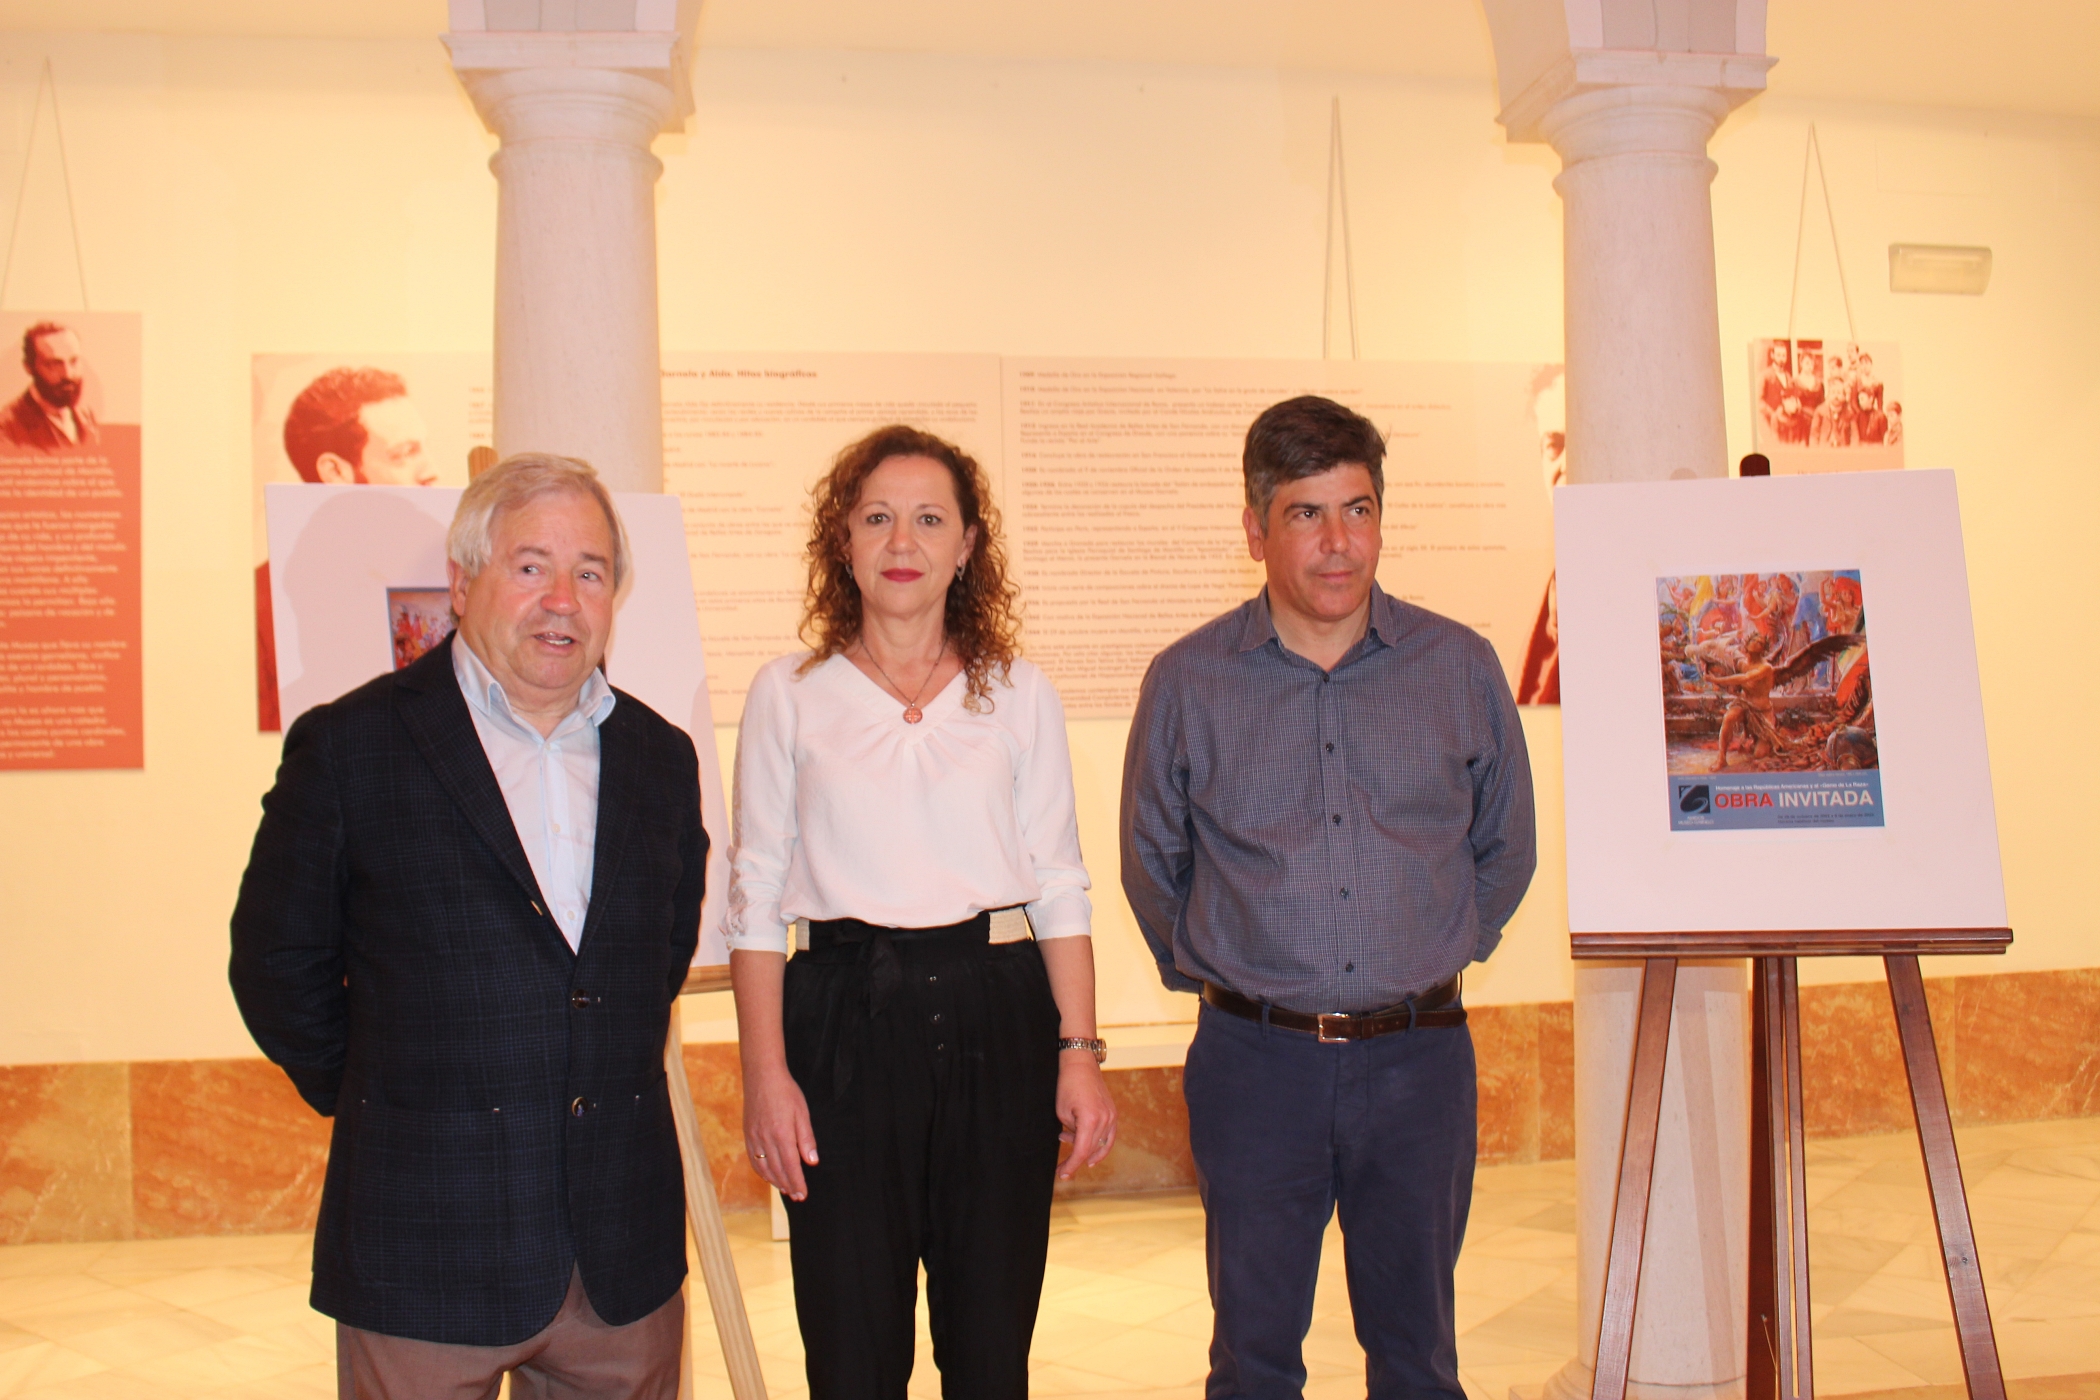 El alcalde, la delegada de Cultura y el director honorario del Museo Garnelo presentan la próxima Obra Invitada.